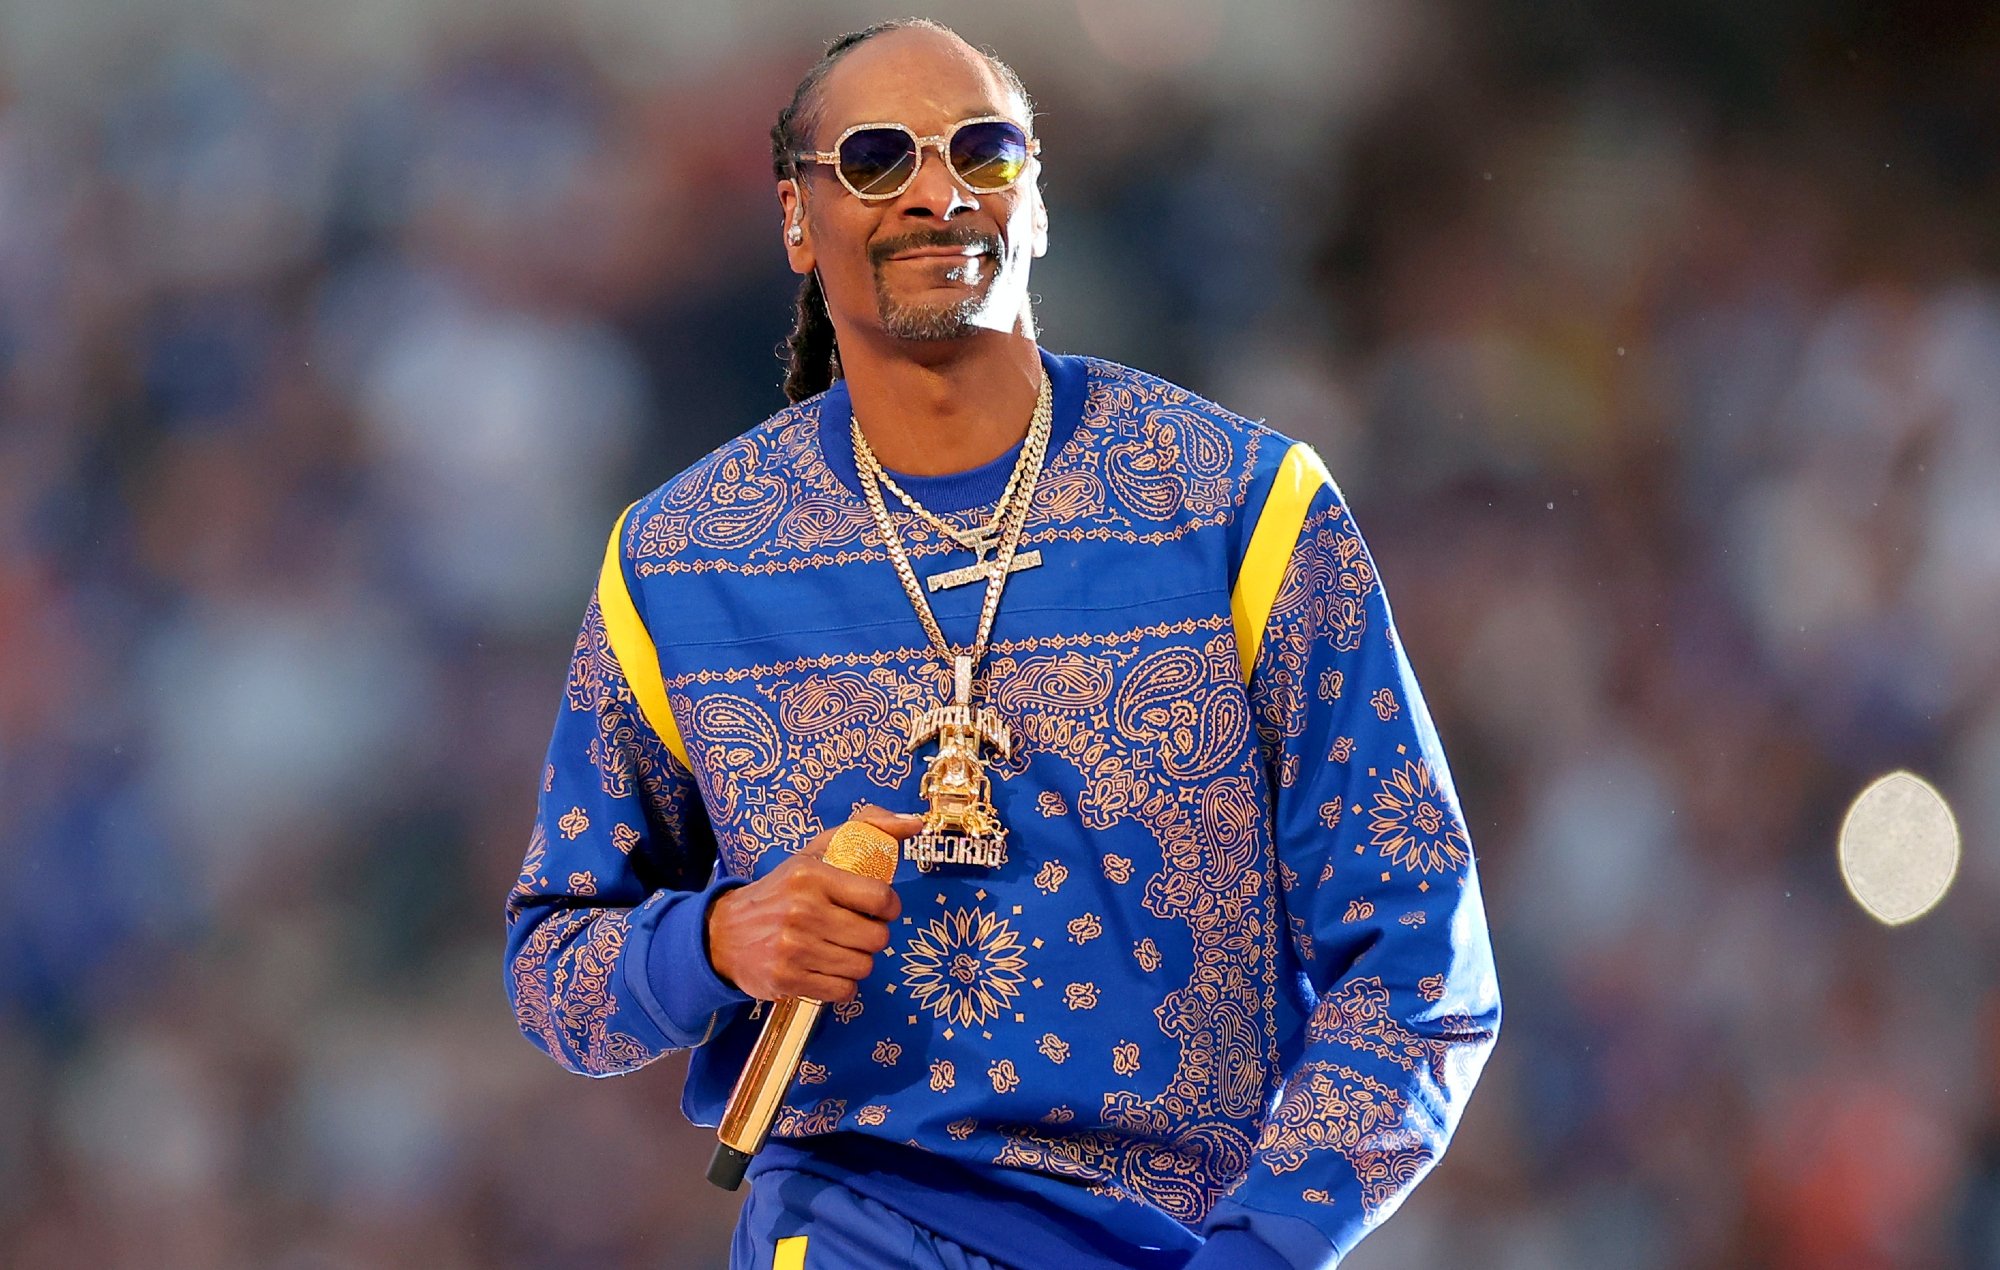 Ünlü Rapçi Snoop Dogg, Metaverse Temalı Şarkı Yaptı